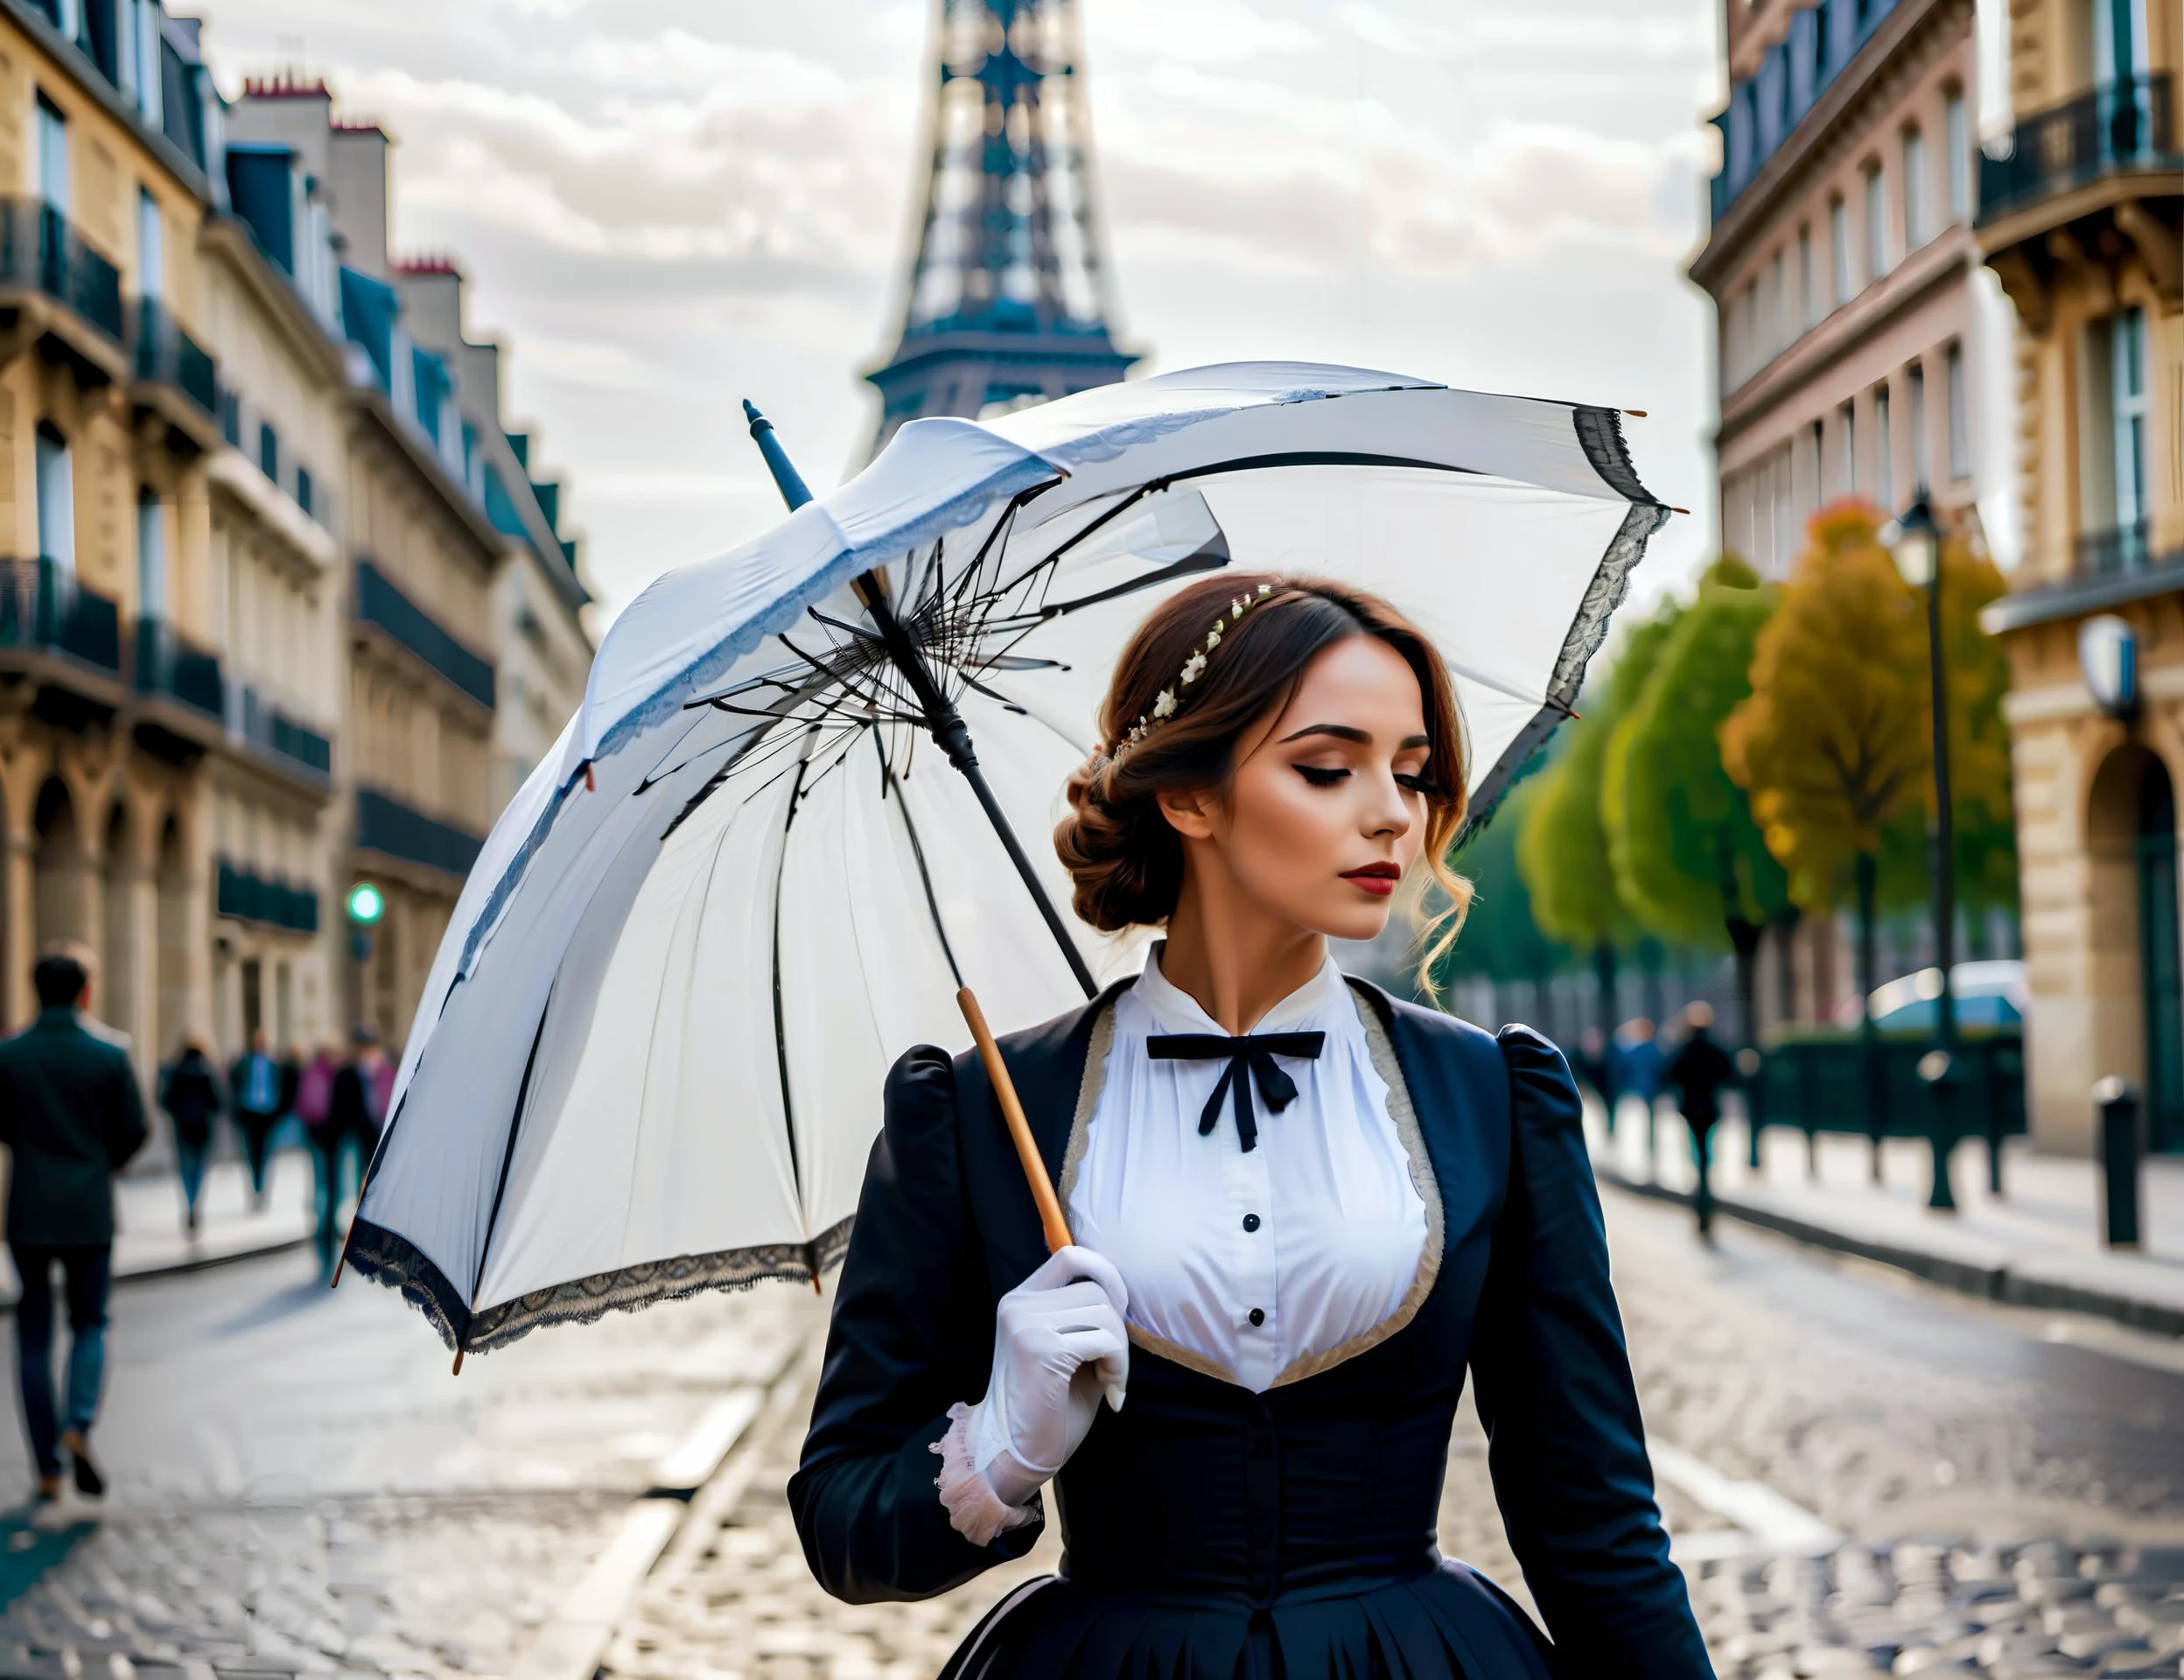 维多利亚时代,  法国巴黎, 身穿传统服饰的巴黎妇女, 白色雨伞, 时髦, 年轻的, 走在鹅卵石街道上, 白天, 埃菲尔铁塔, 照片, 高清, 杰作, 最好的质量, 高质量,   电影剧照, 电影剧照, 電影, 電影 Shot, 電影 Lighting ,  吸引人的,